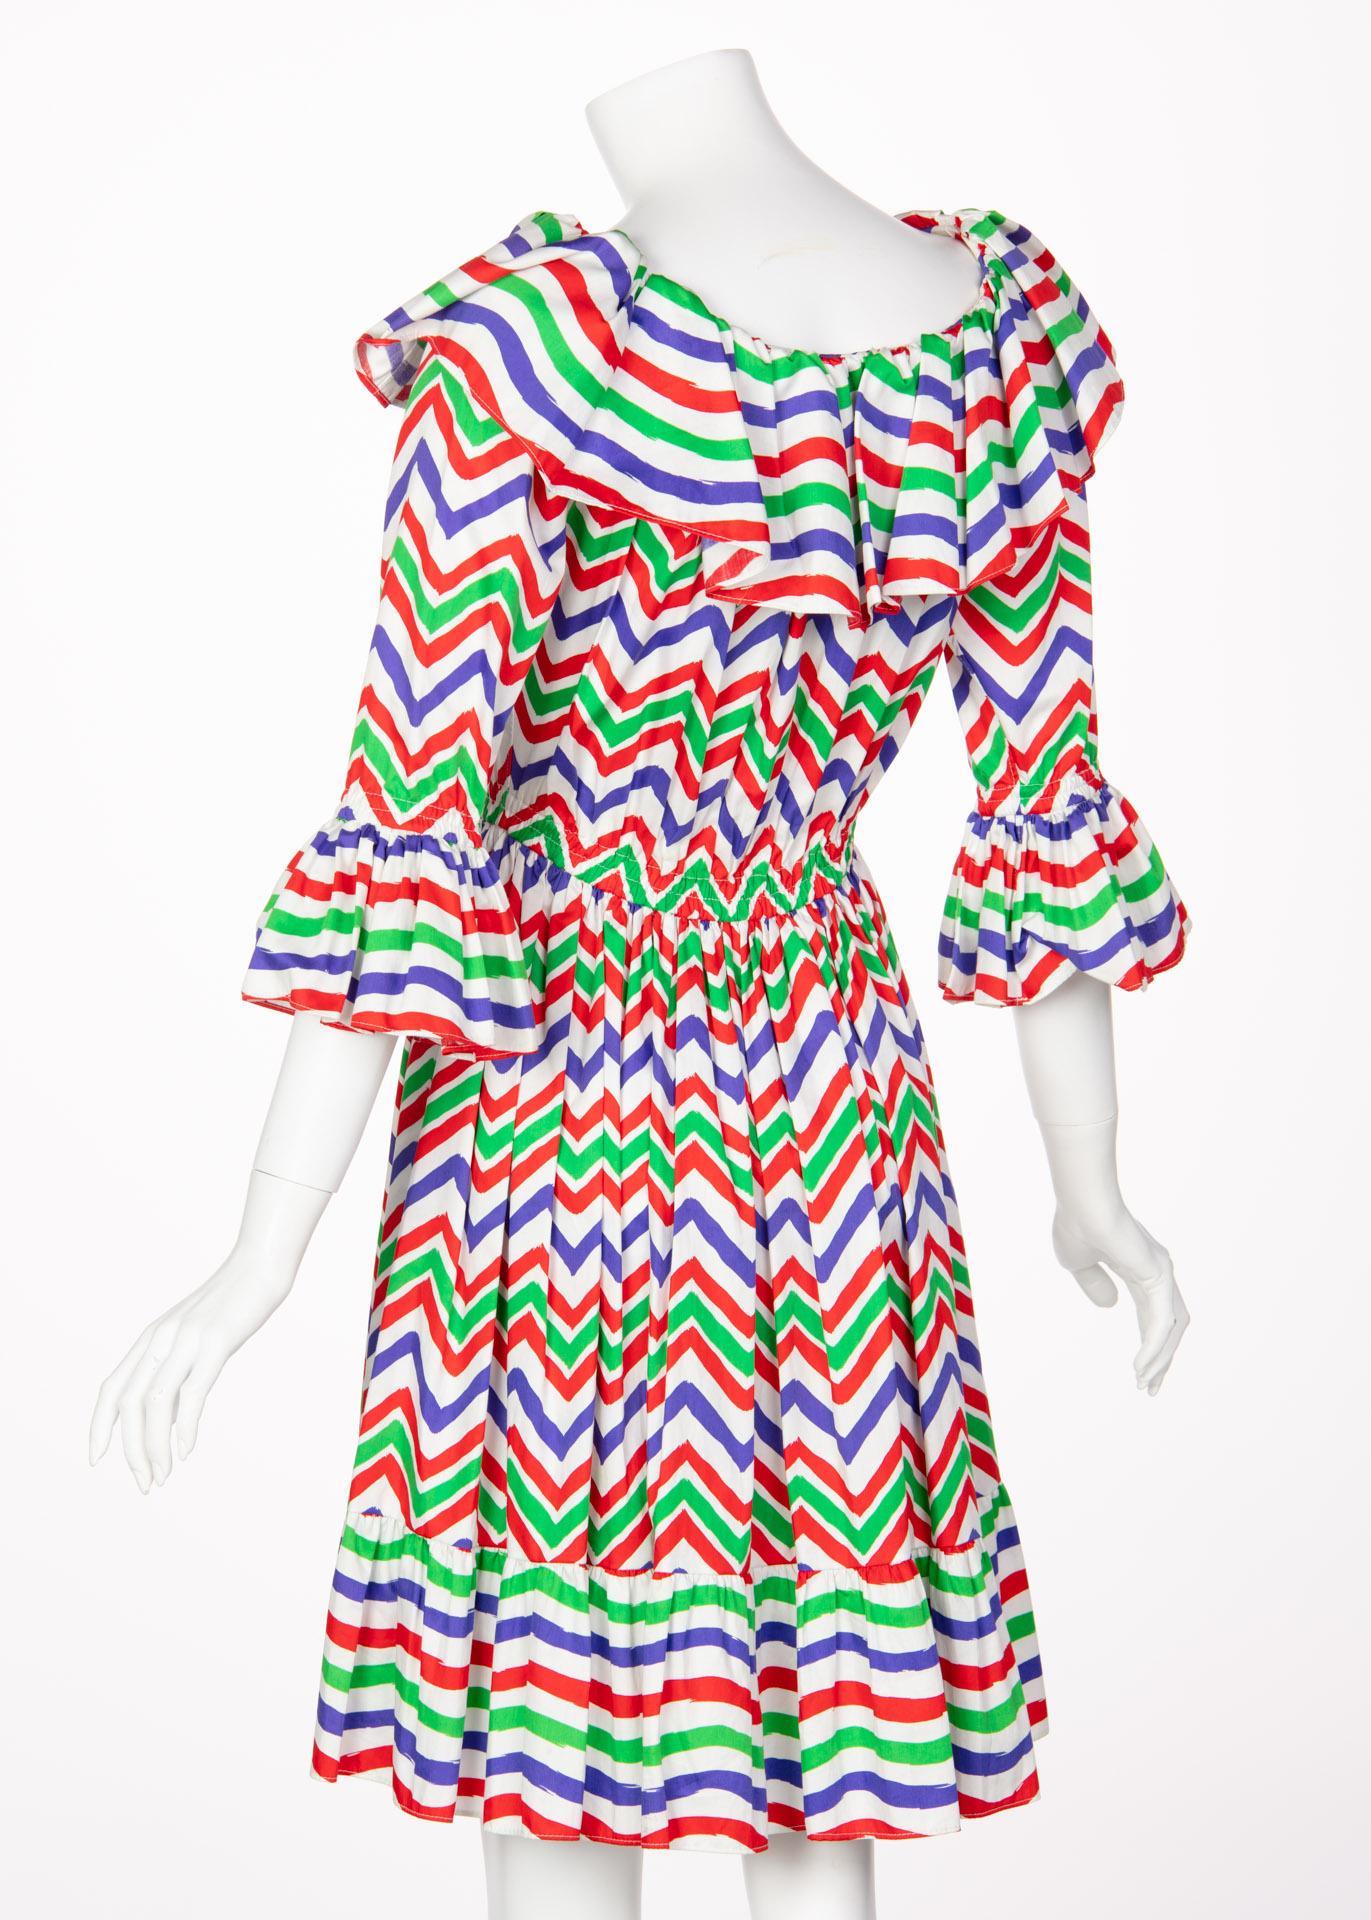 Yves Saint Laurent YSL Cotton Print Flamenco Dress, 1970s  For Sale 1